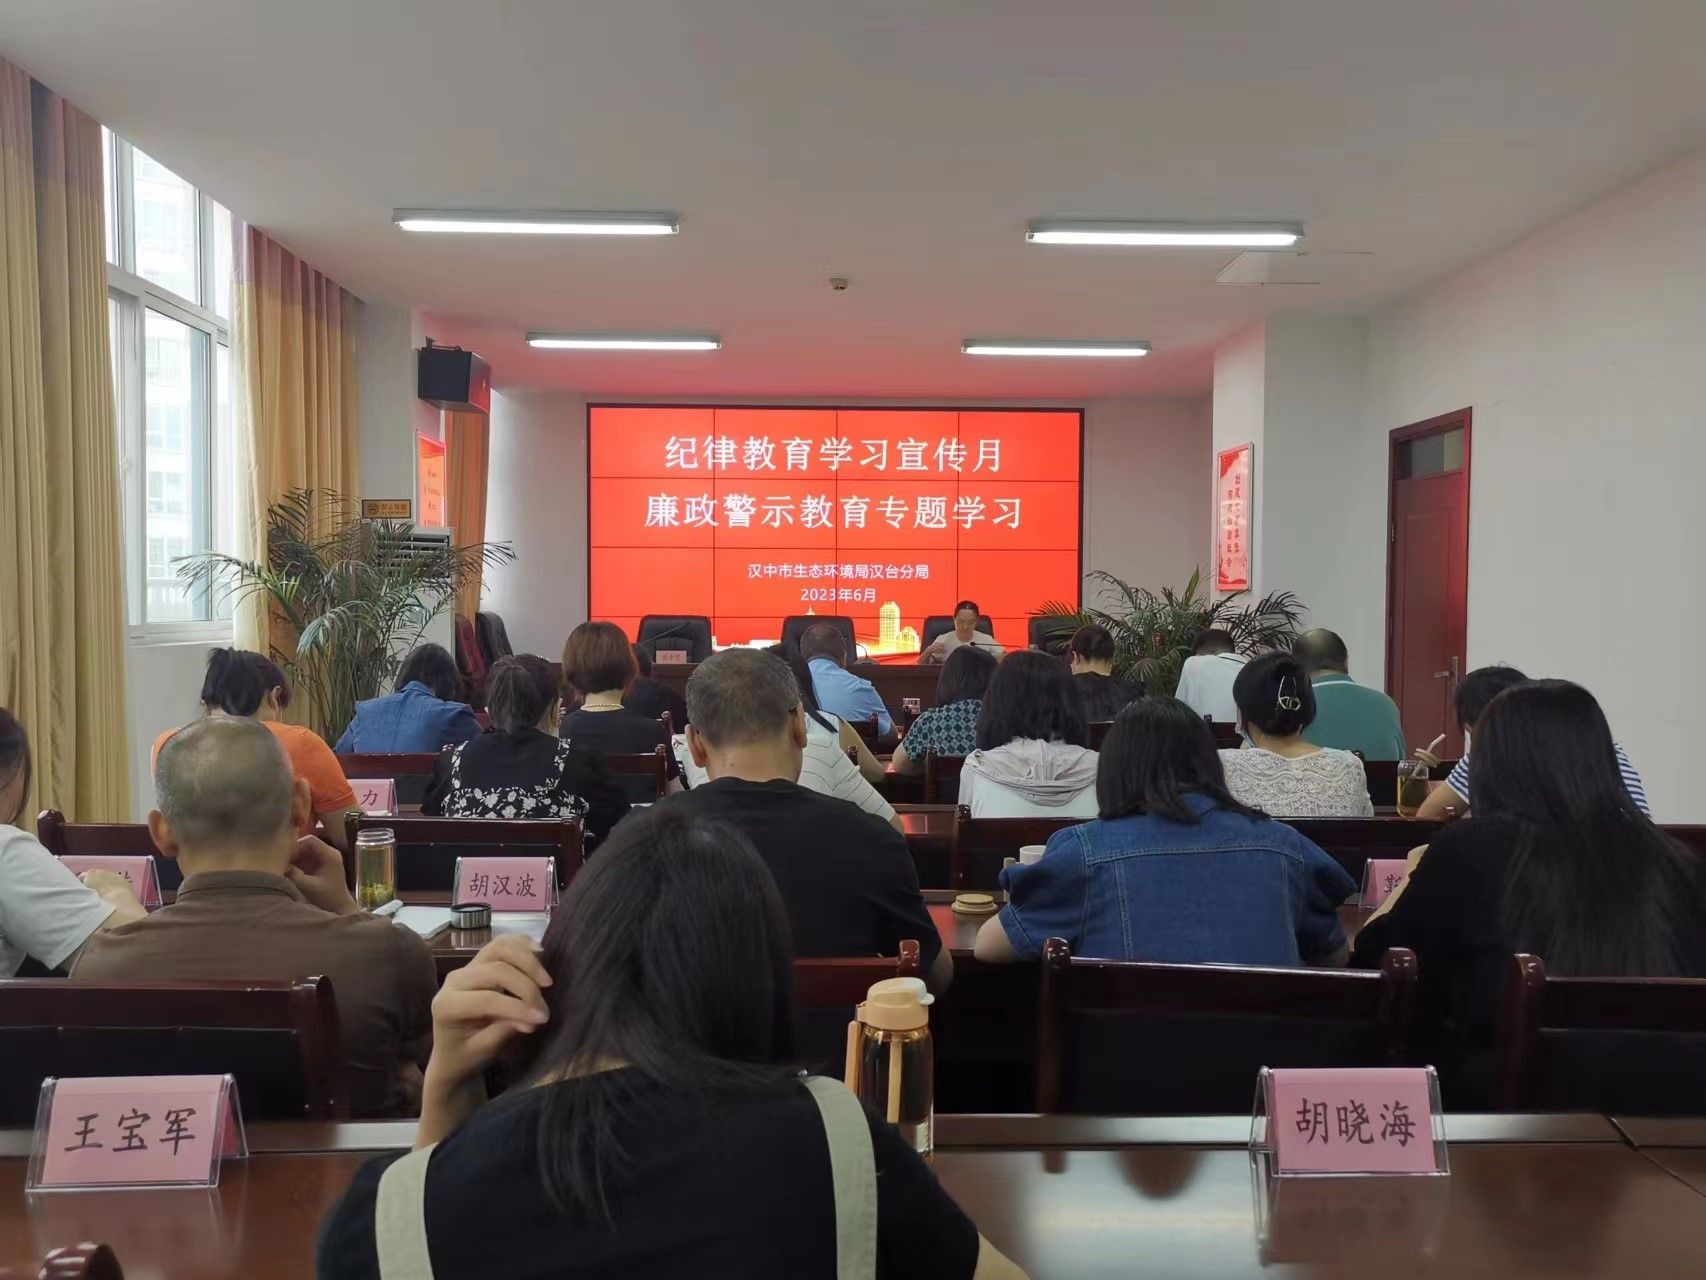 汉中市生态环境局汉台分局五项举措推动纪律教育学习宣传月活动落细见效